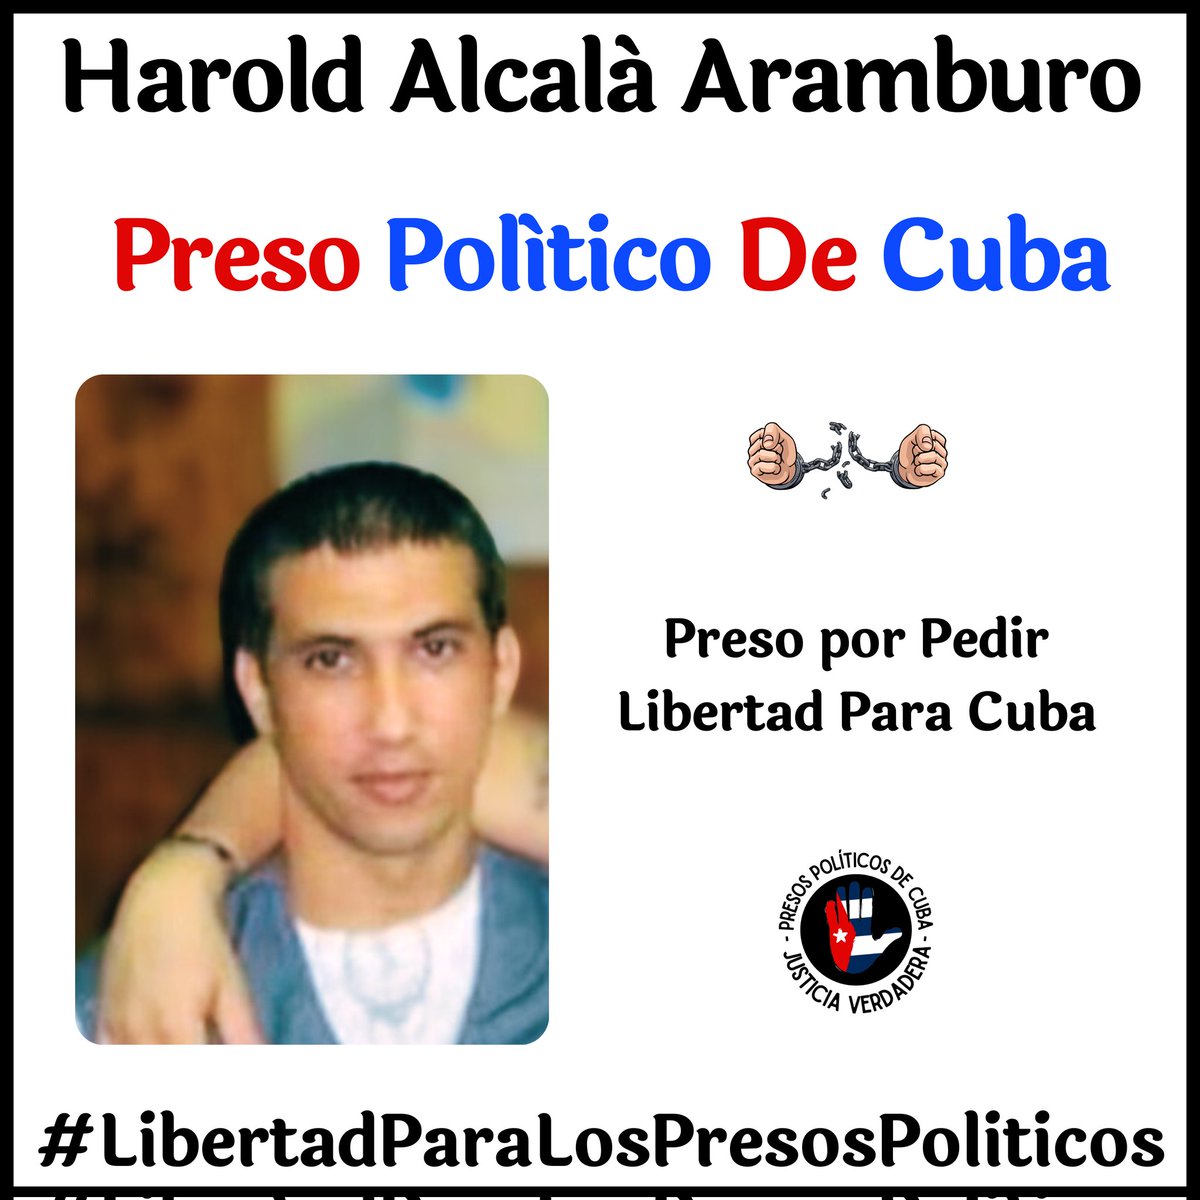 #Twittazo Libertad para los #PresosDeCastro. Son inocentes. No pararemos de denunciar y pedir su libertad. 🇨🇺💪🏻
.
.
.
#HastaQueSeanLibres 
#PresosPoliticosDeCuba
#LibertadParaLosPresosPoliticos